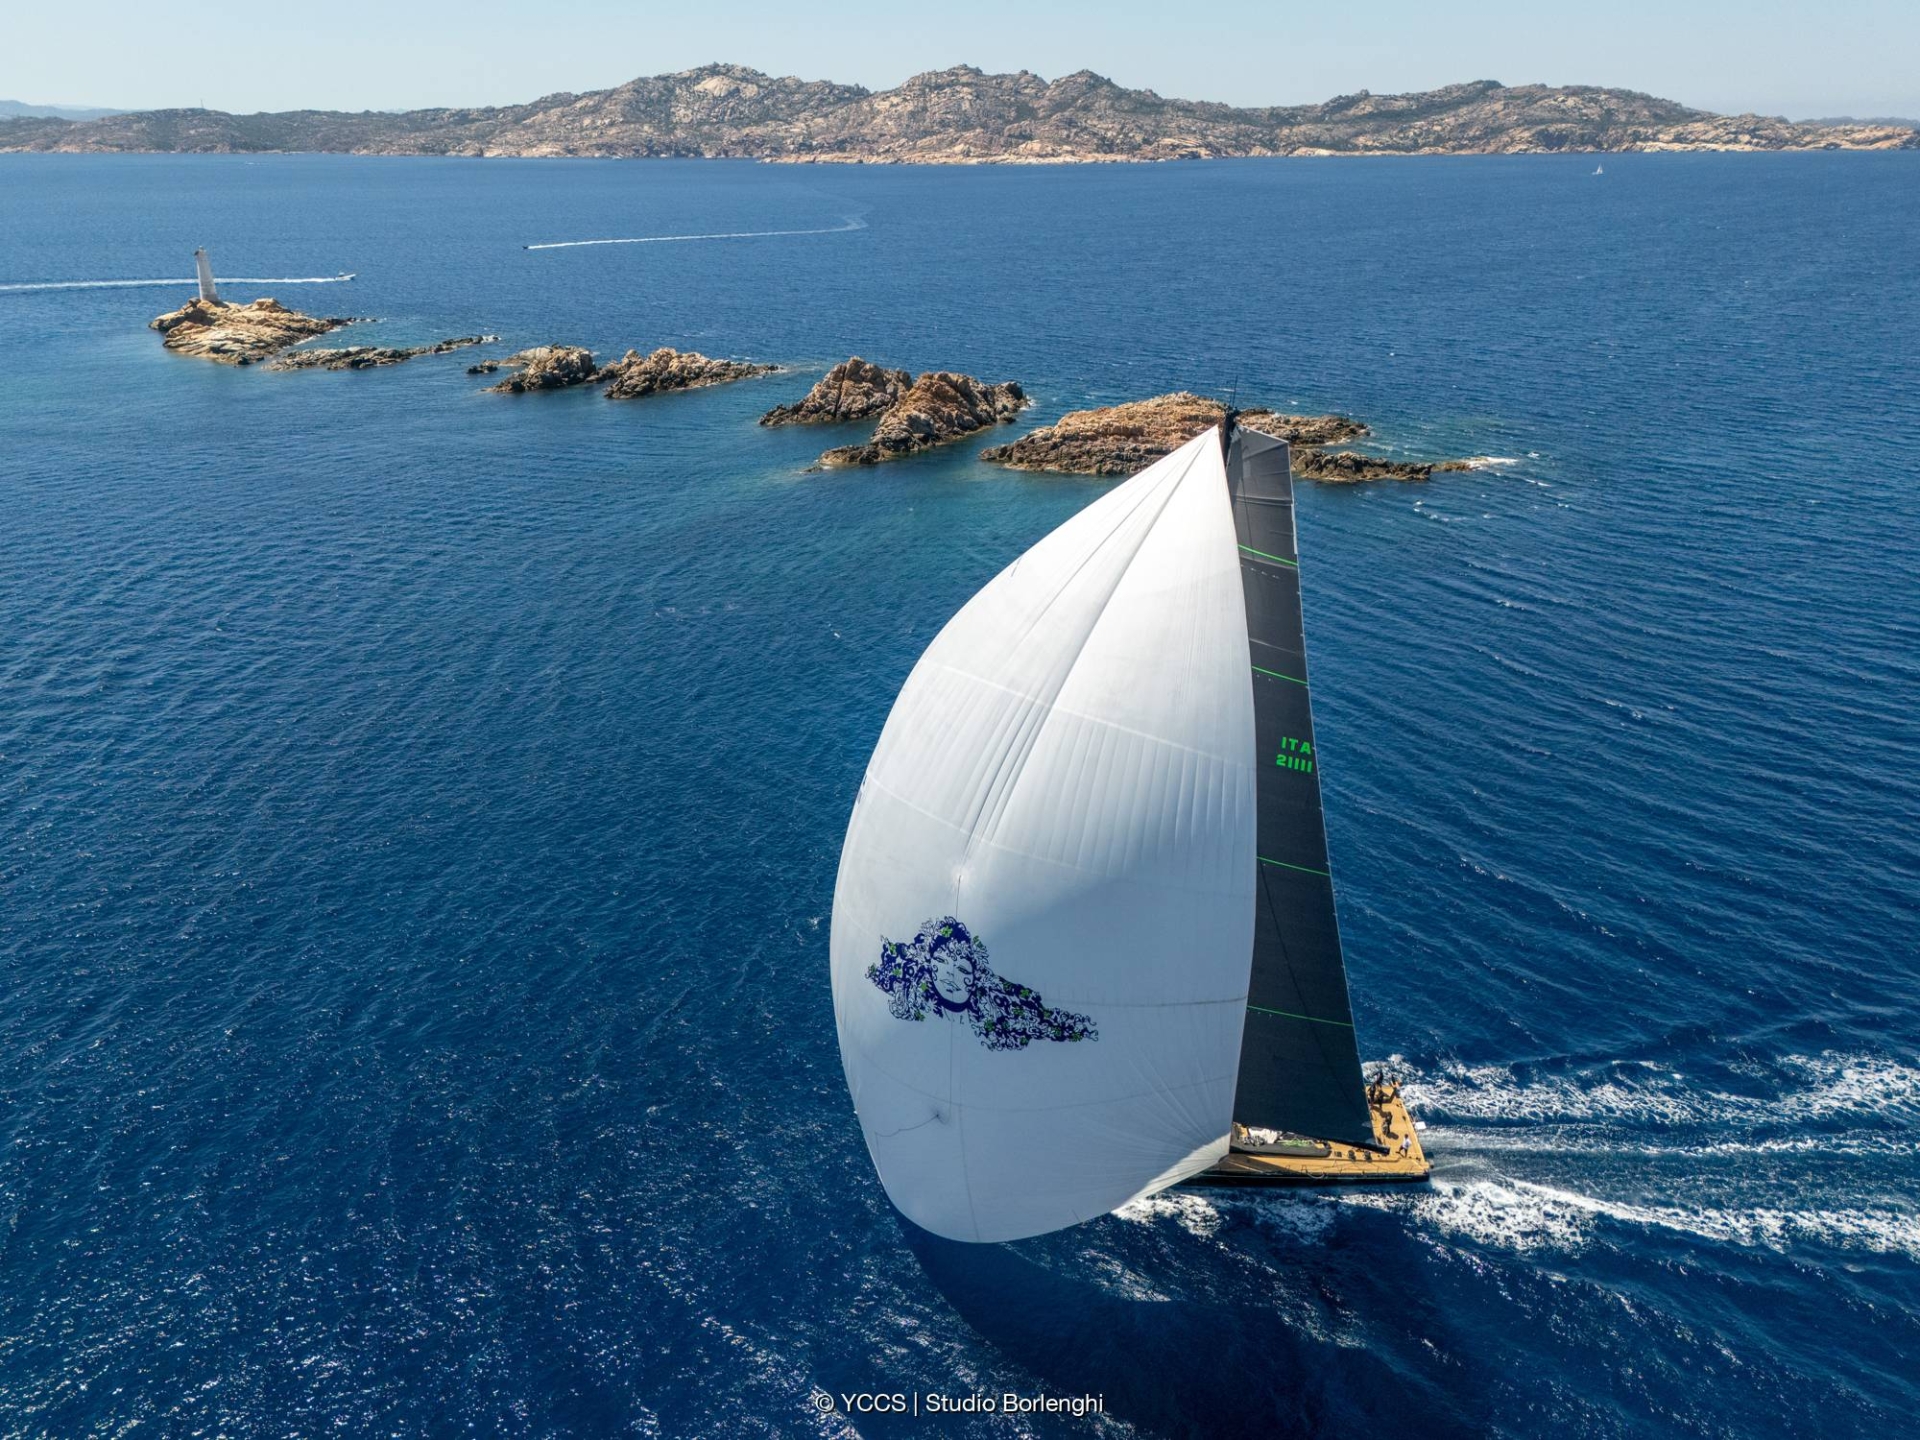 Un inizio perfetto alla Giorgio Armani Superyacht Regatta - NEWS - Yacht Club Costa Smeralda